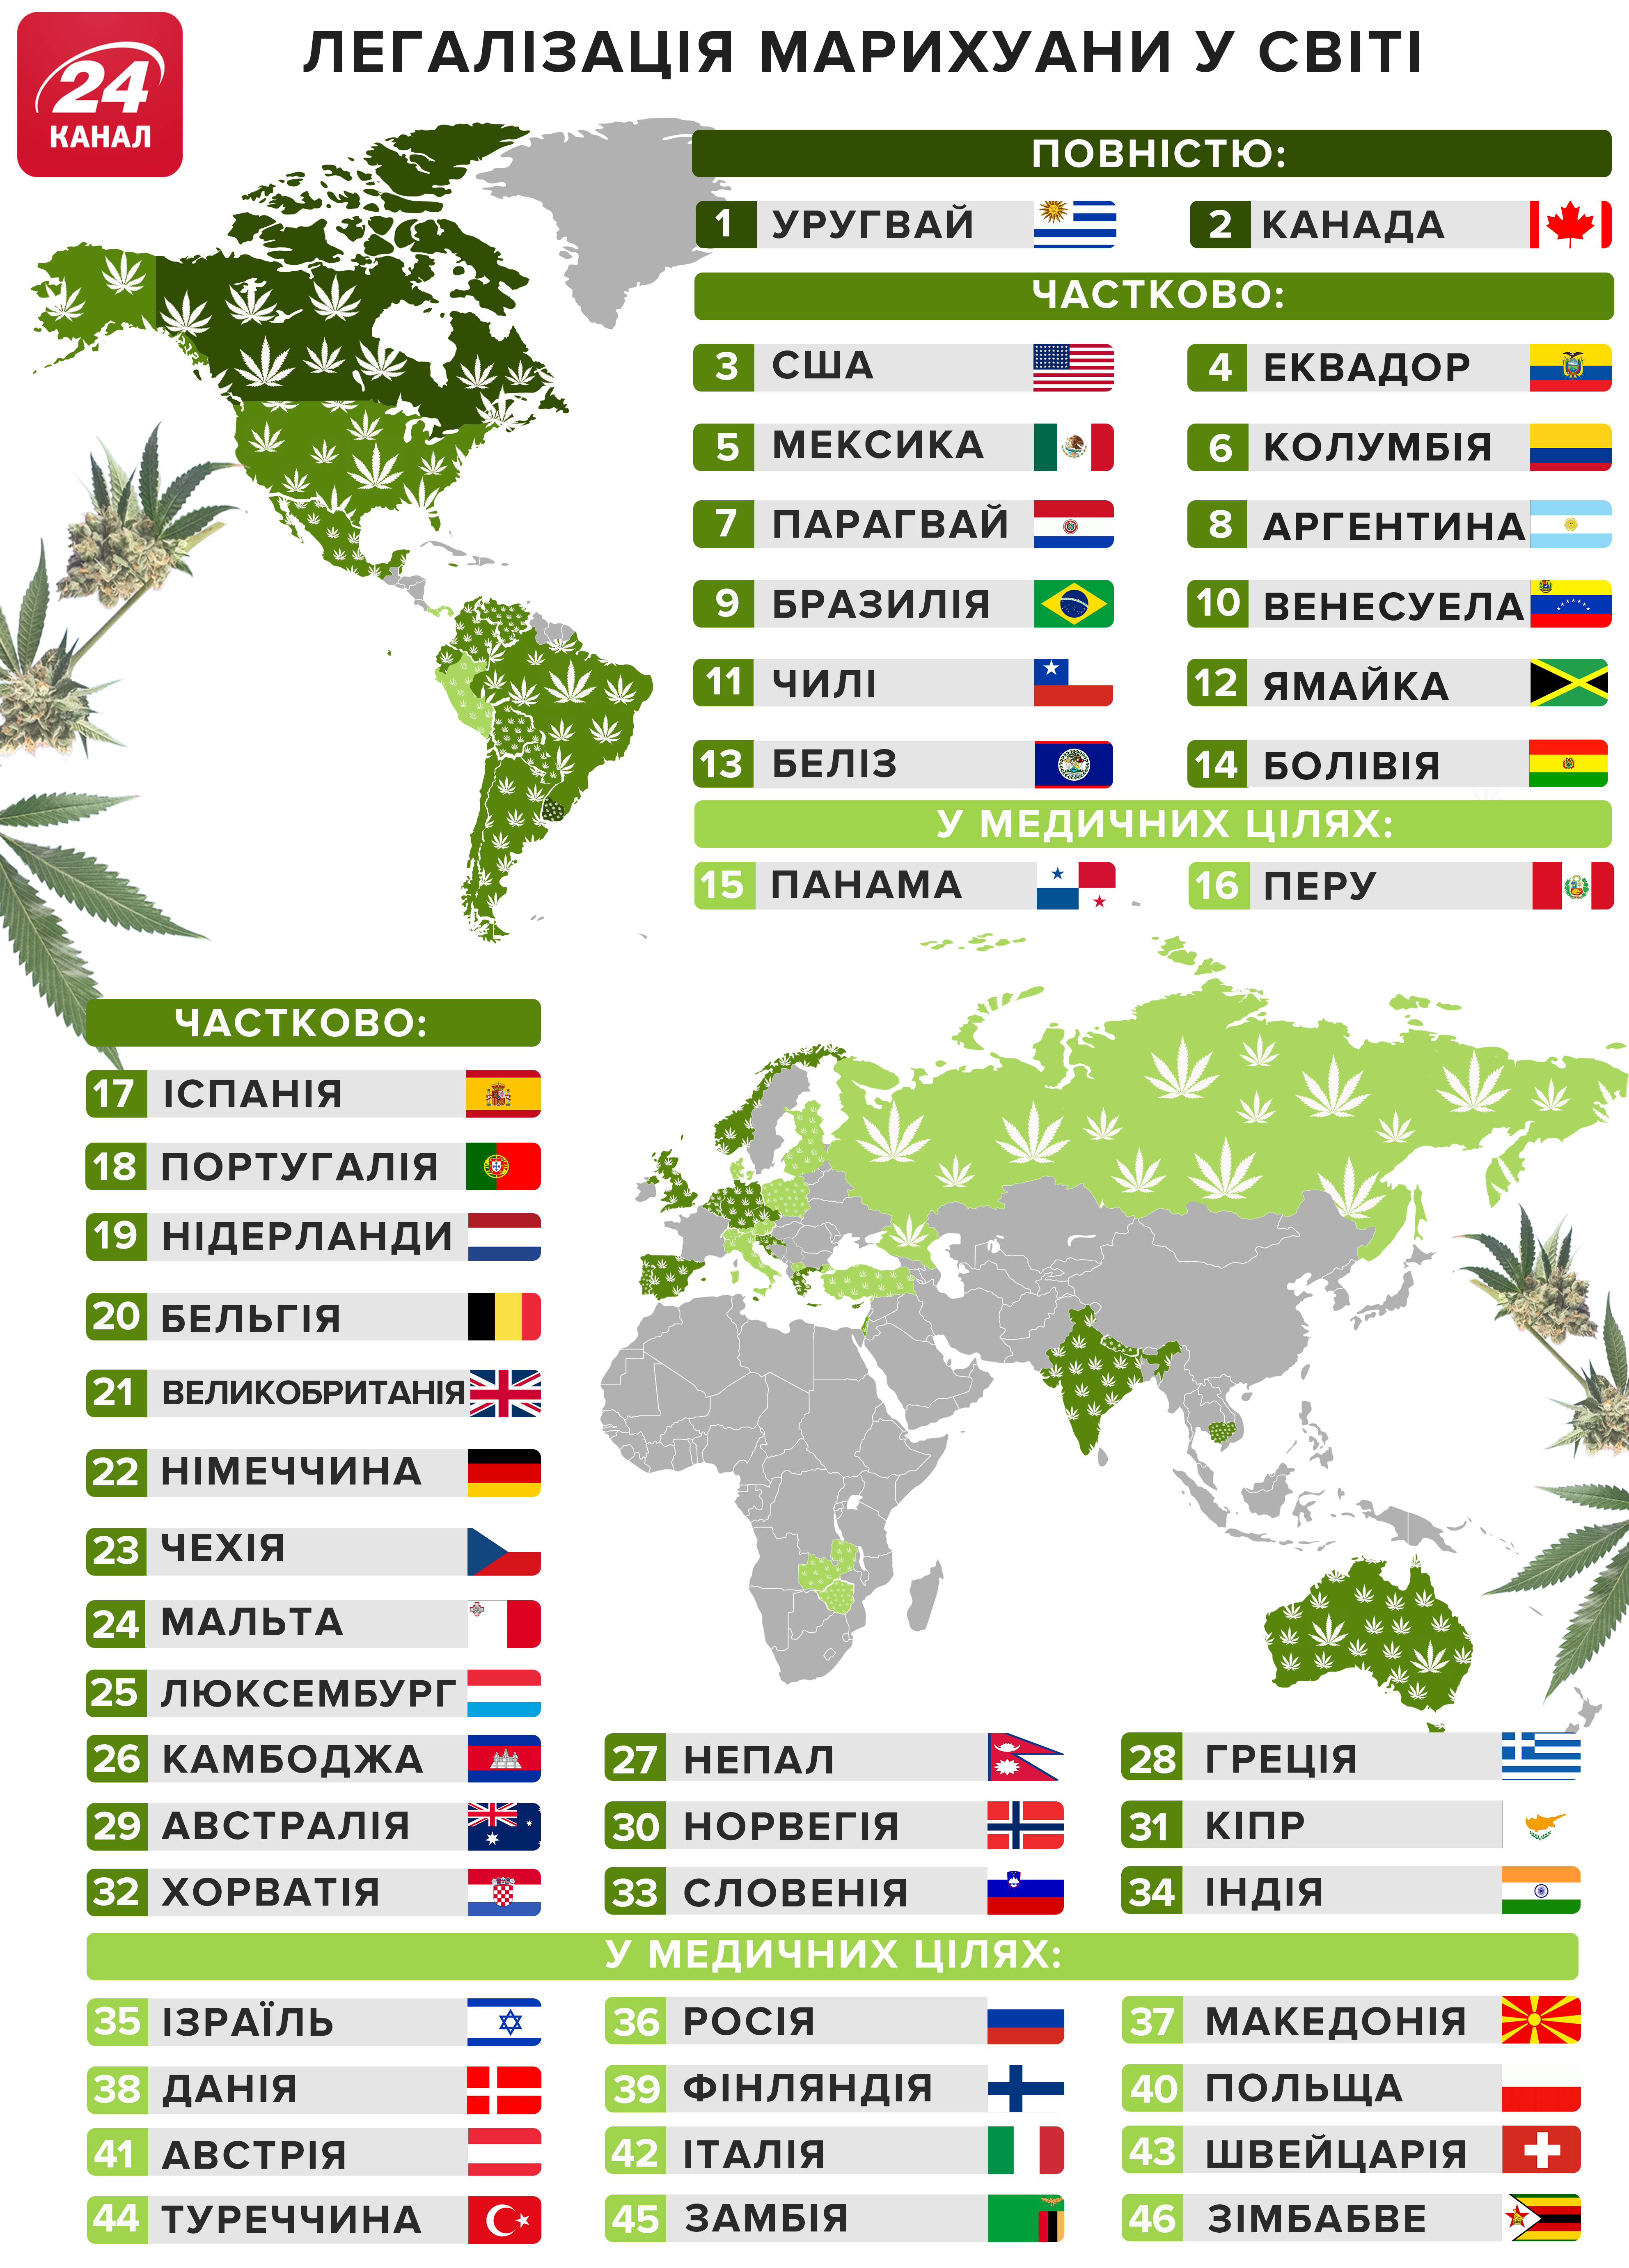 Страны лигалайза марихуаны ванкувер и марихуана